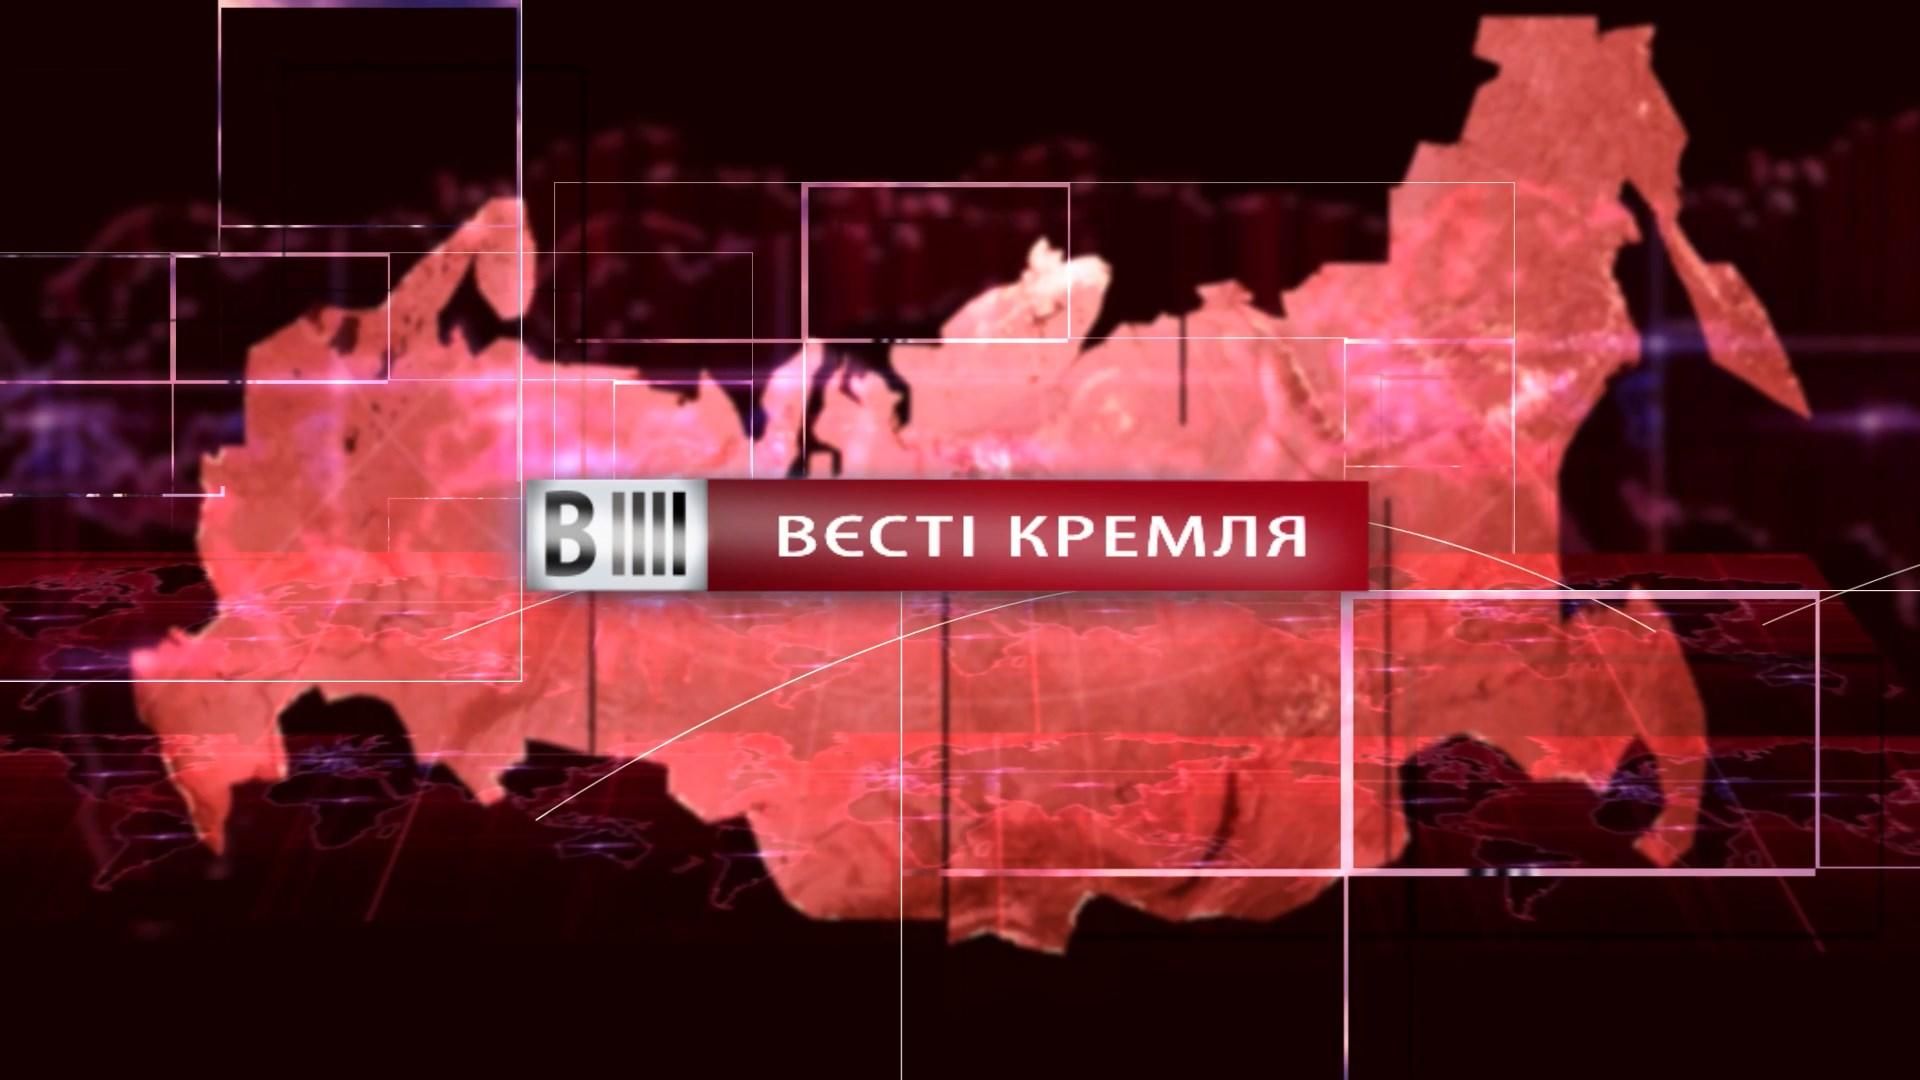 Смотрите "Вести Кремля". Спаситель человечества – Путин. Туалет в стиле Януковича